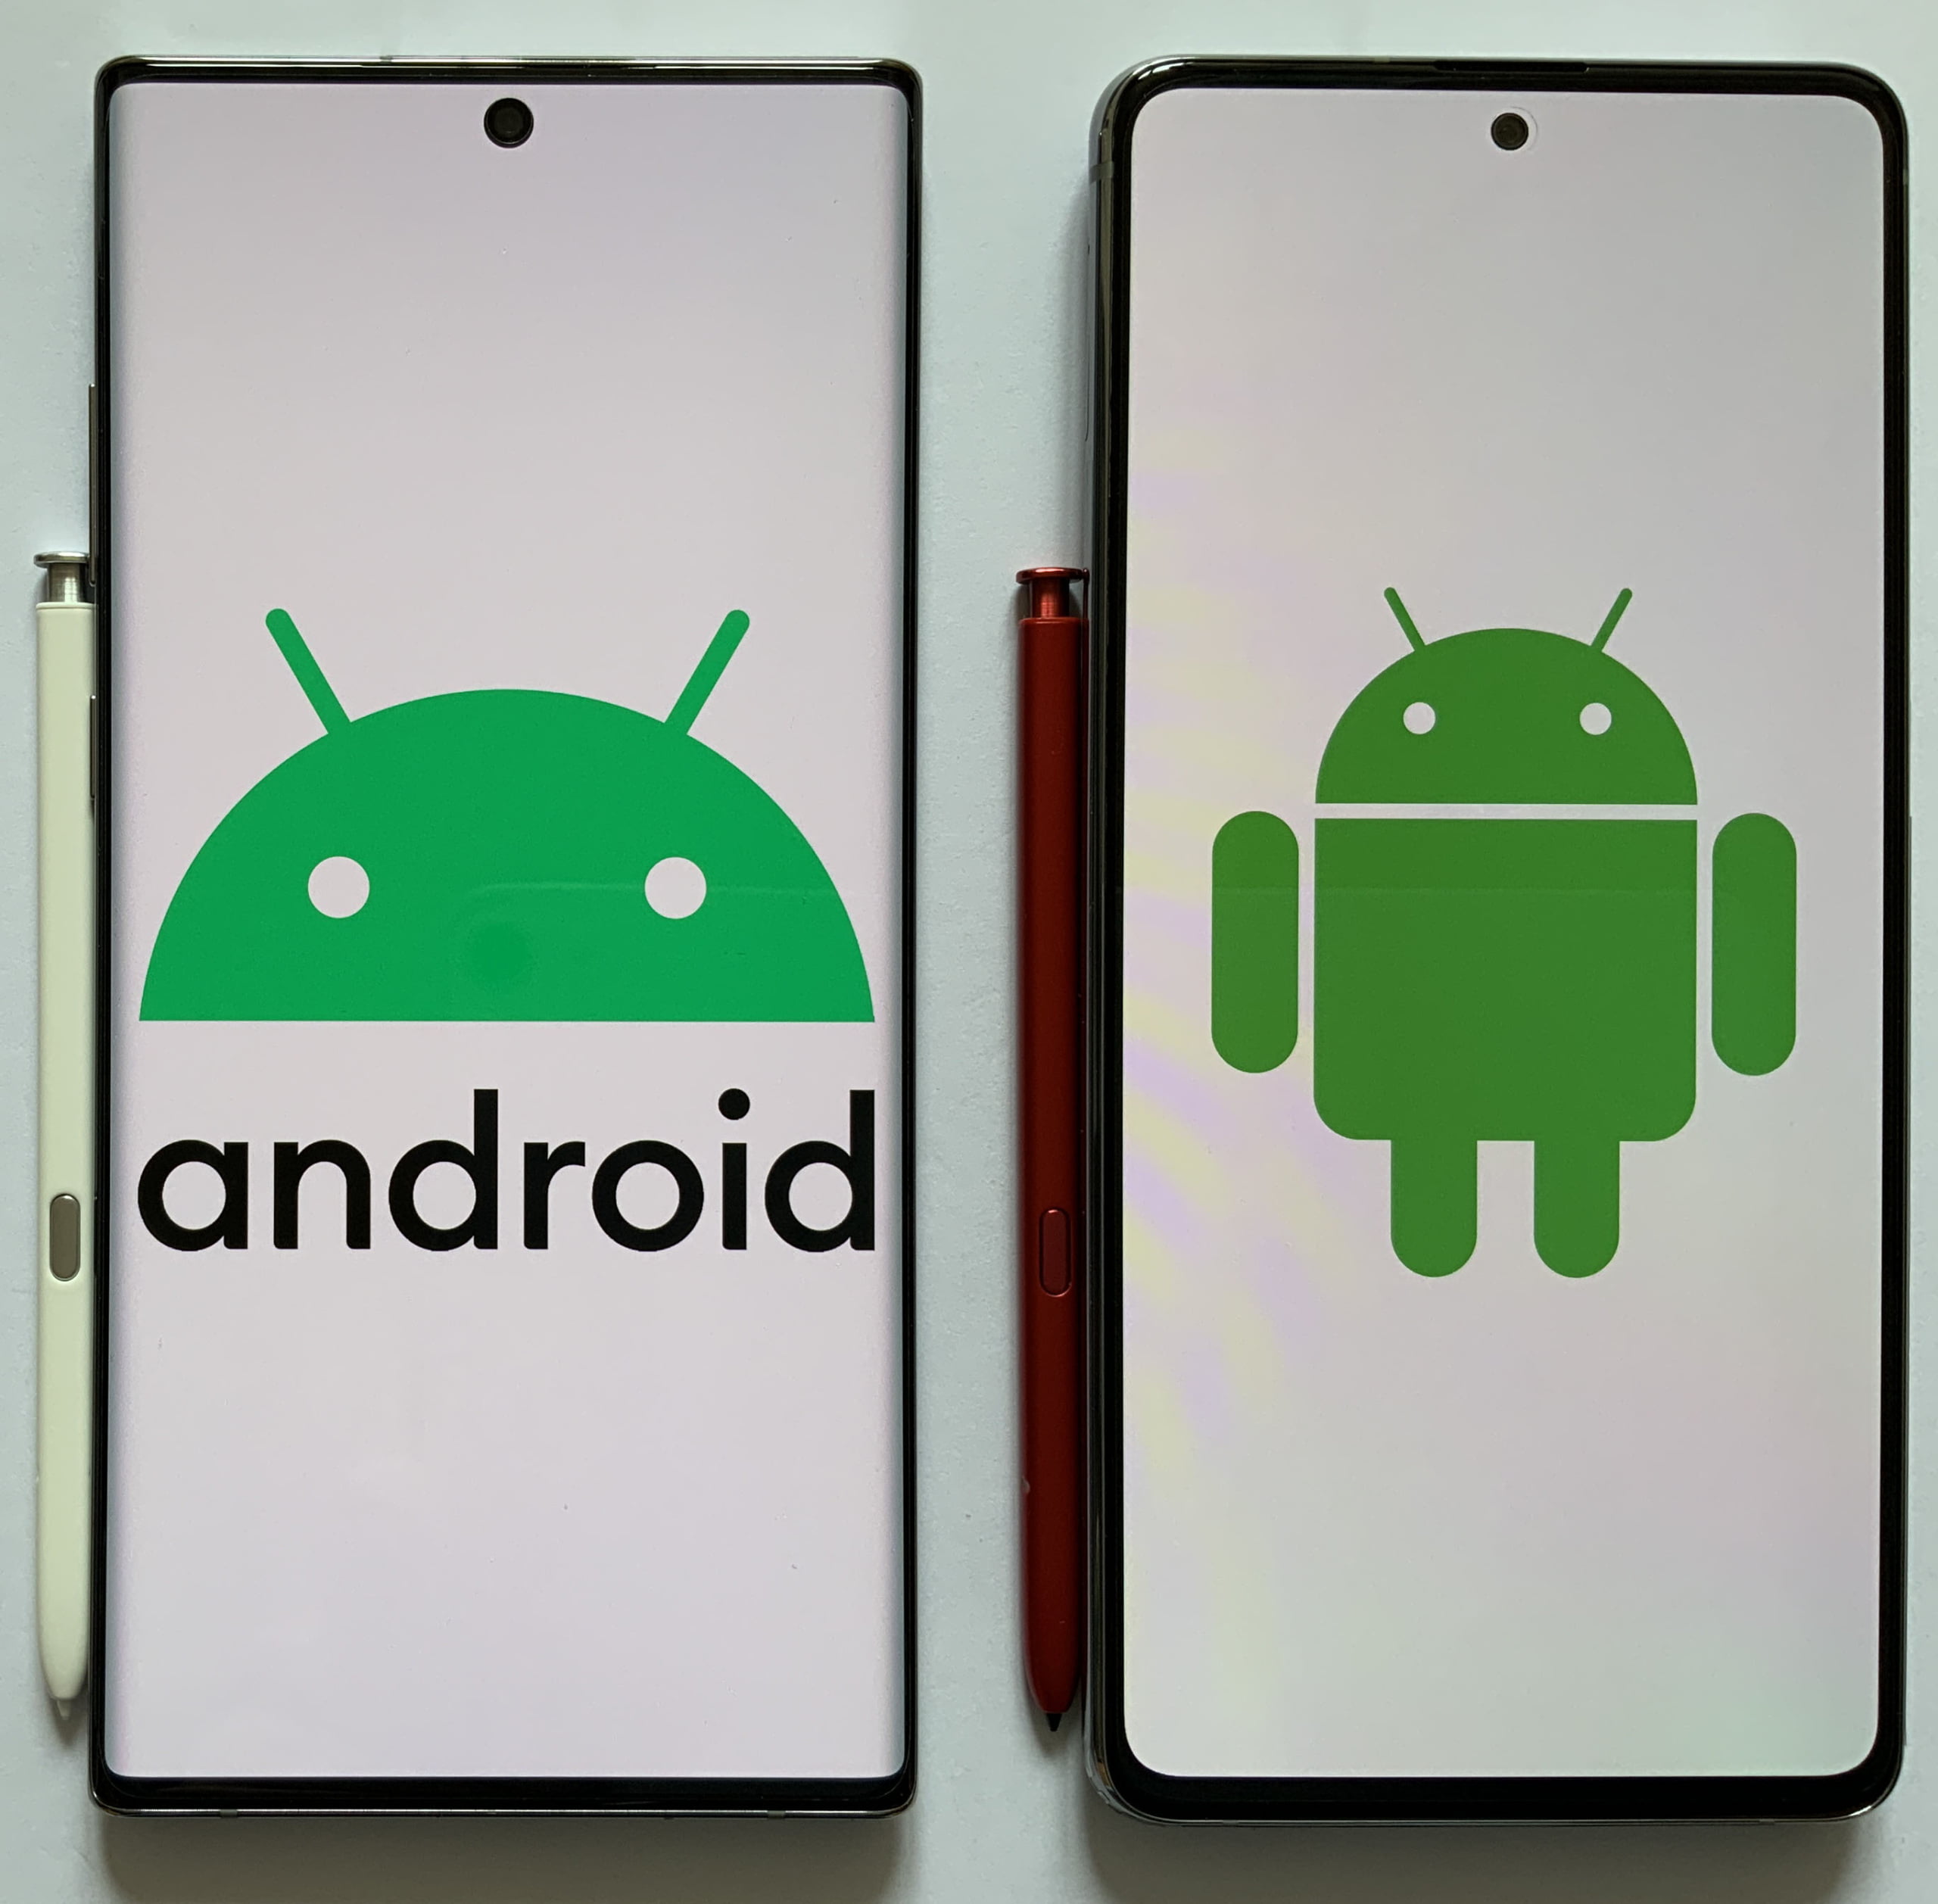  5 specificatii care trebuie integrate in Android 5.0 pentru un nivel optim de securitate